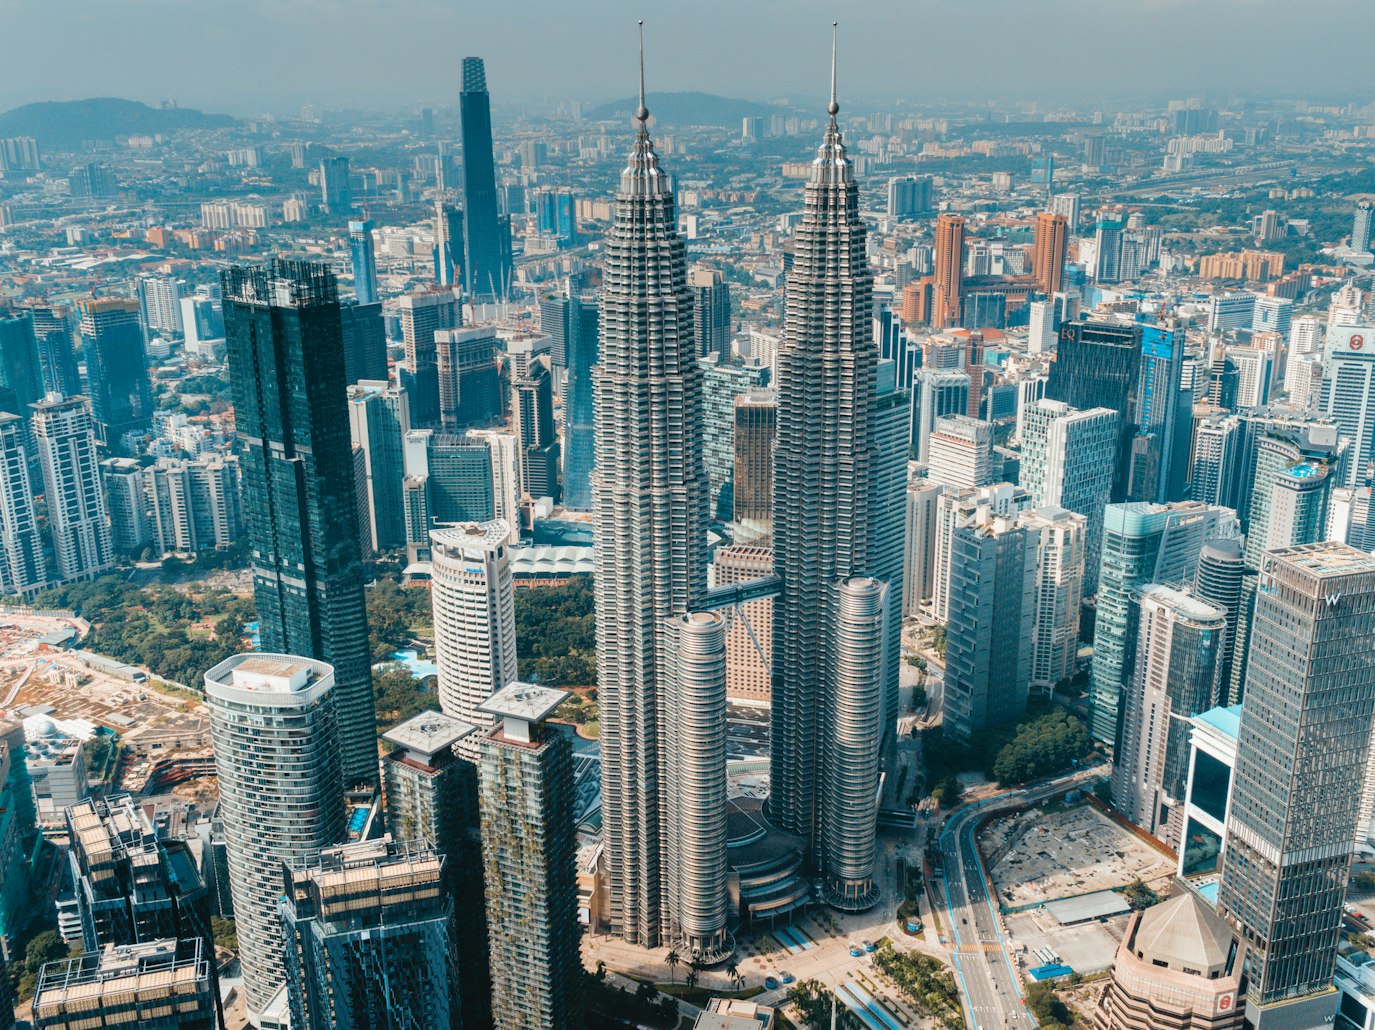 Kuala Lumpur, stolica Malezji